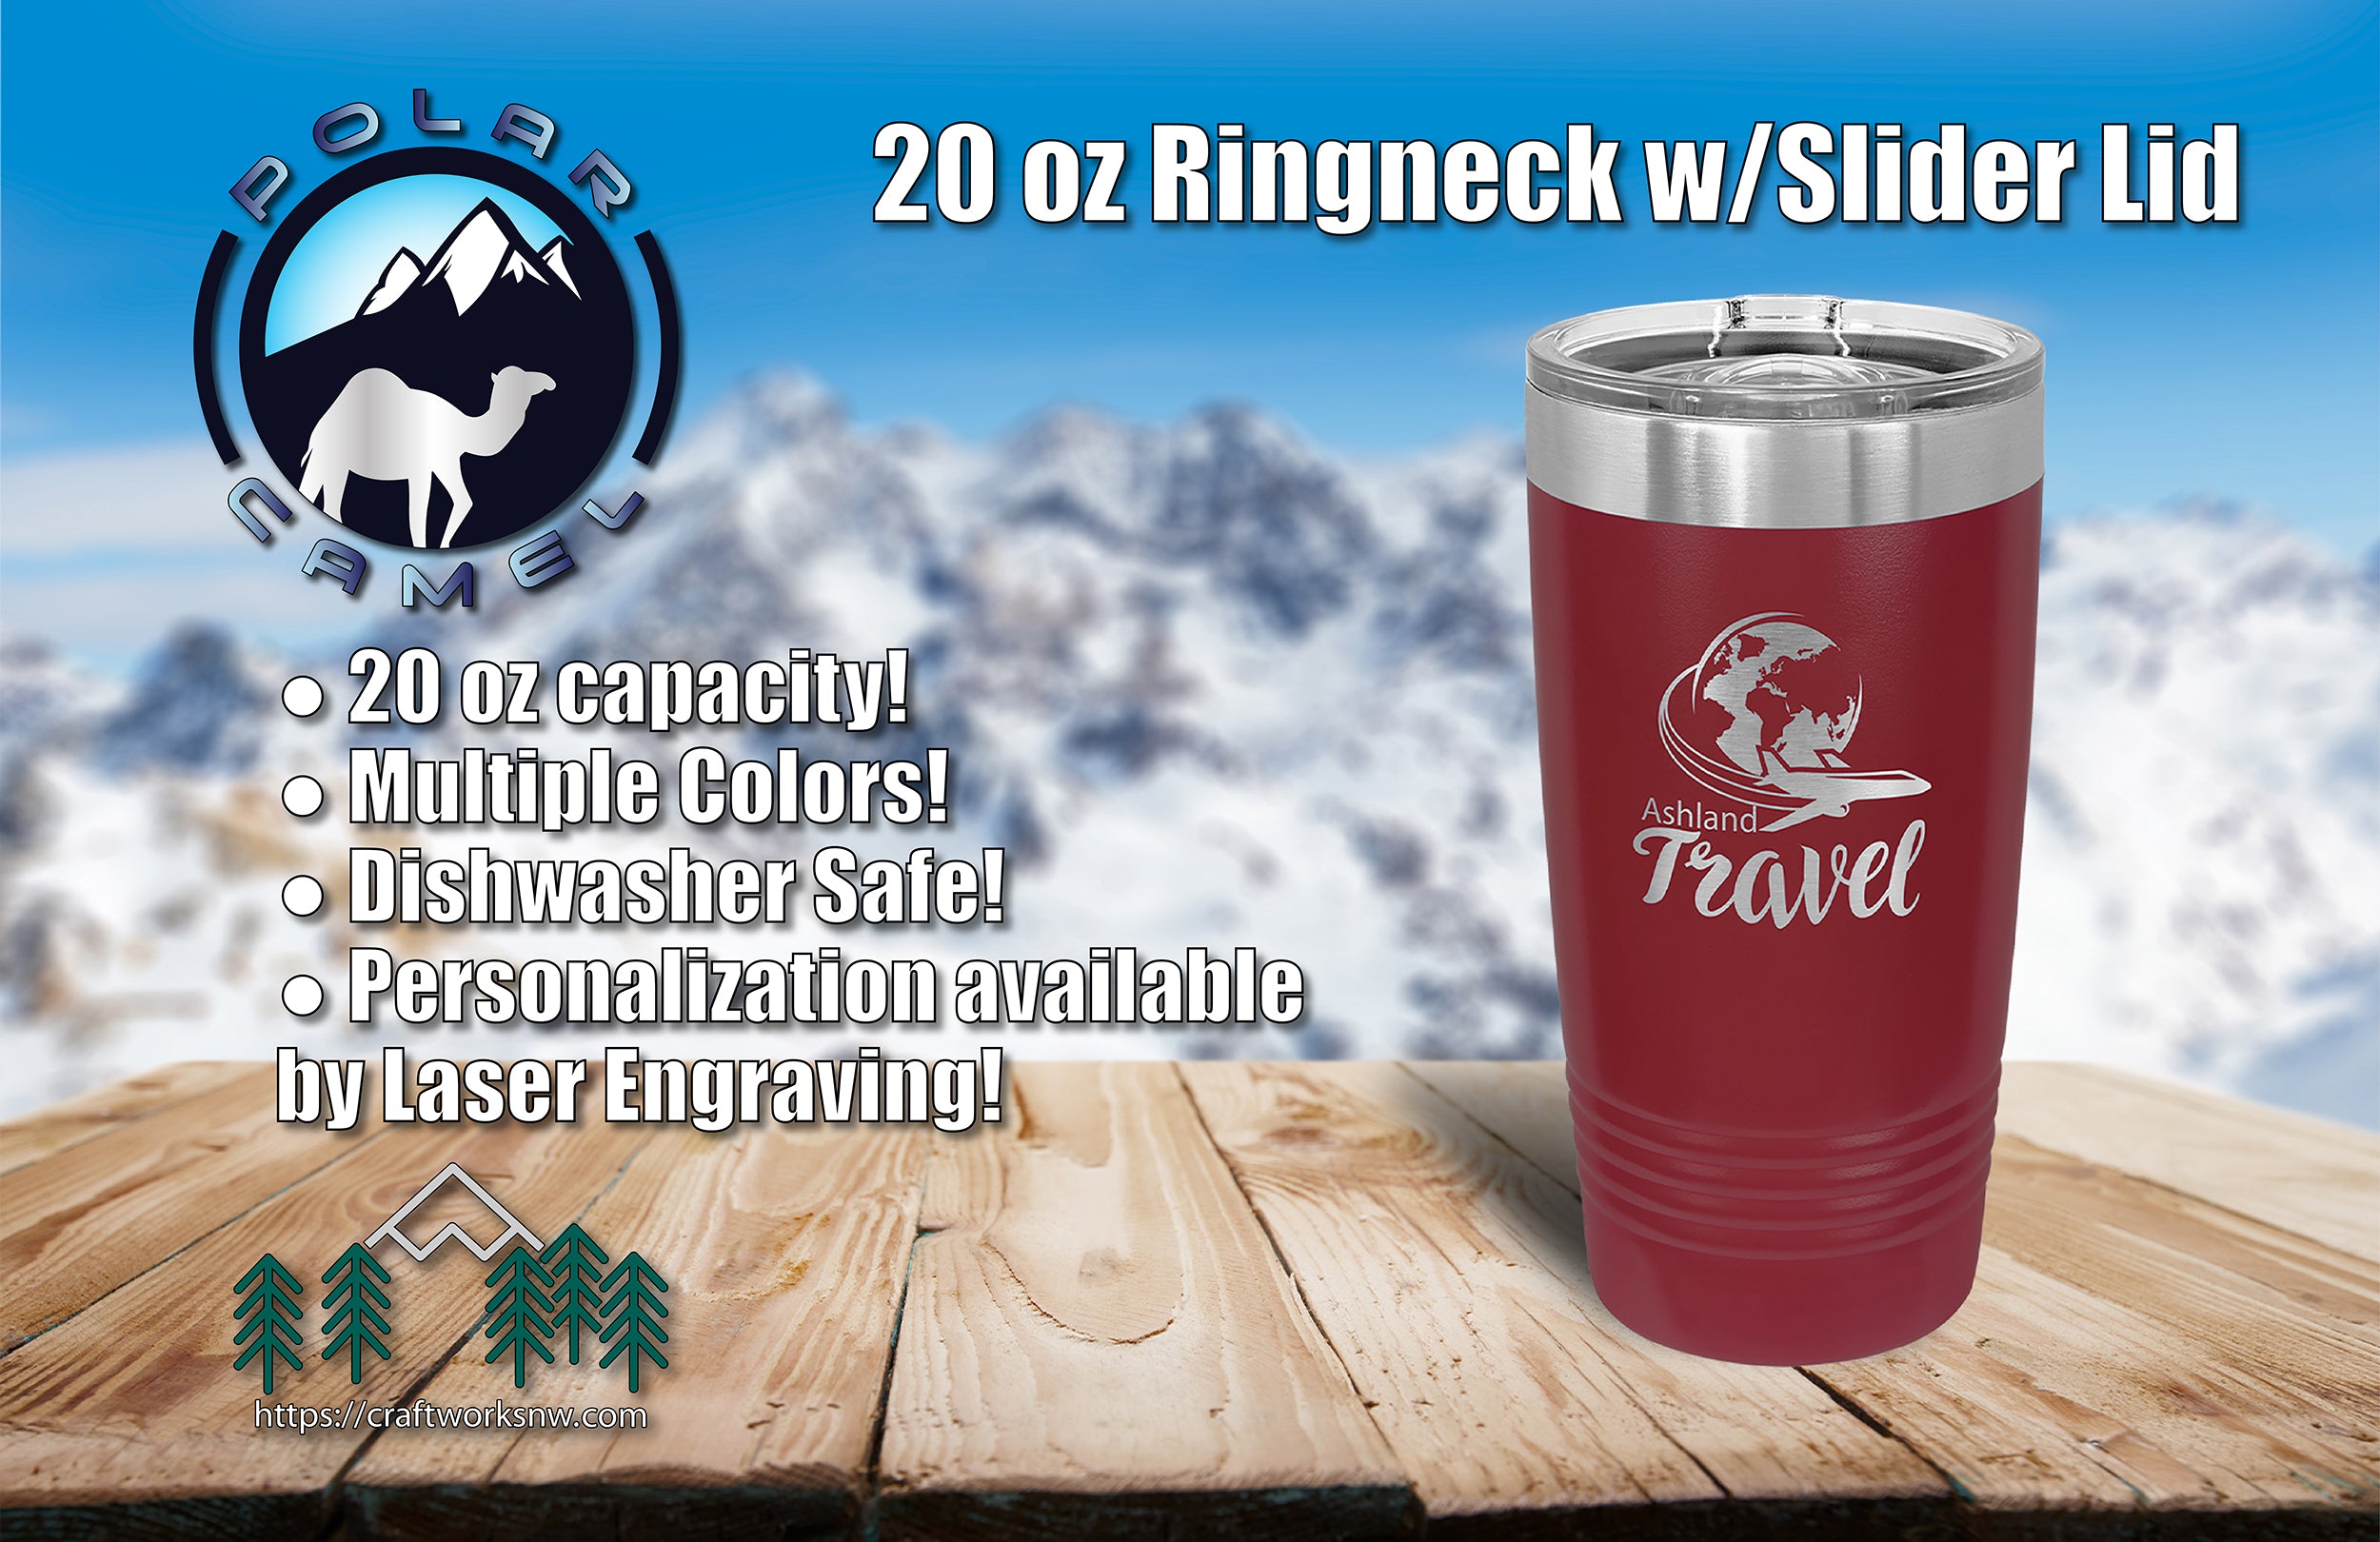 Polar Camel 20oz. Stainless Steel Ringneck Travel Mugs w/Slider Lid, Laser Engraved - Craftworks NW, LLC